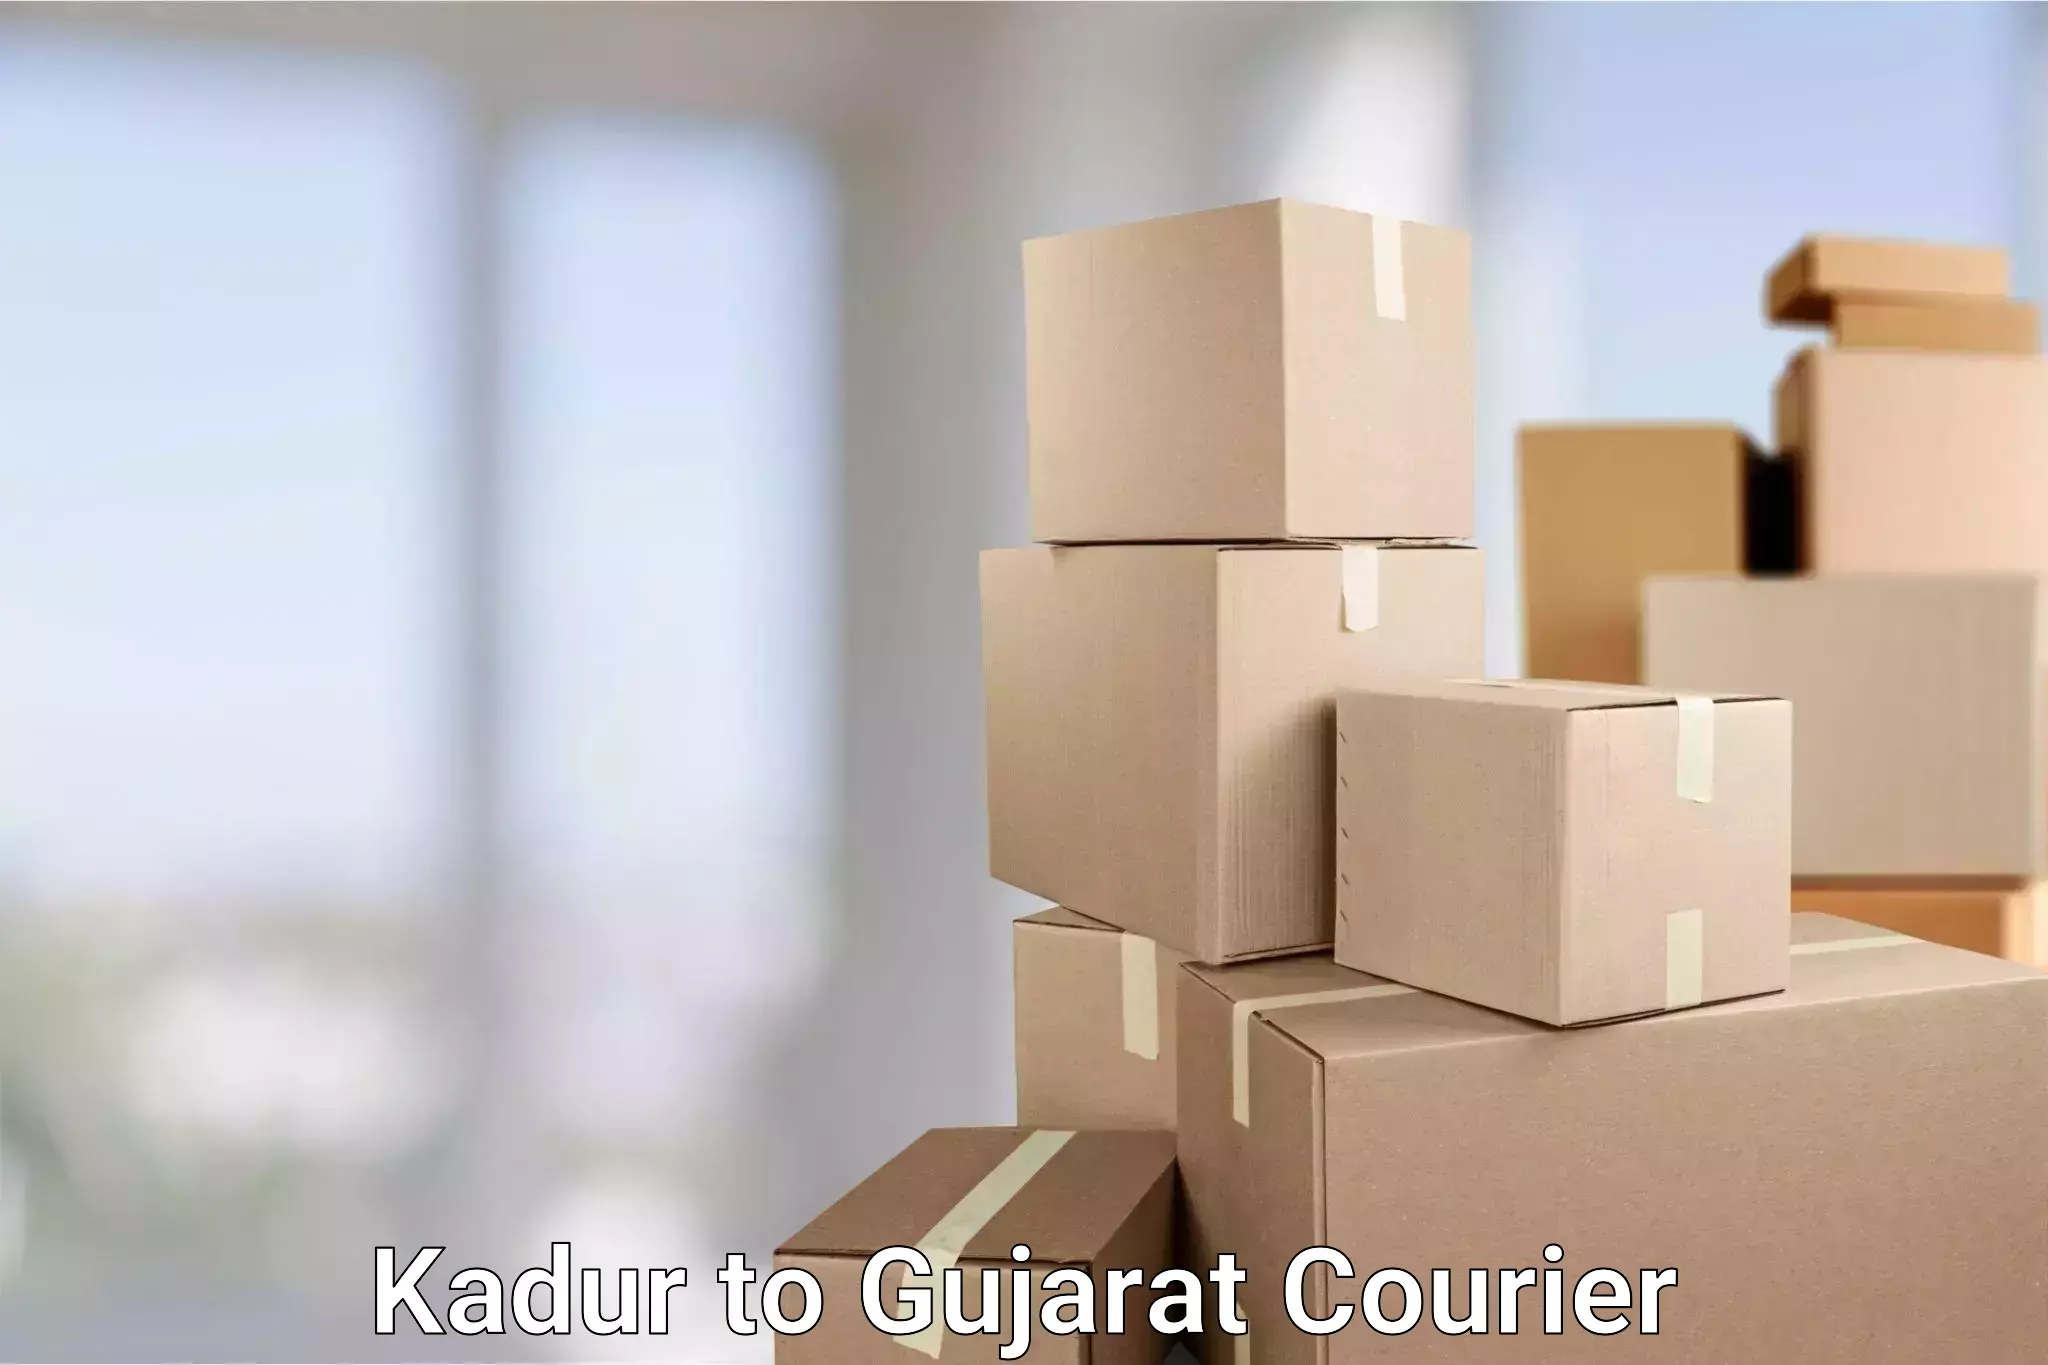 Individual parcel service Kadur to Gujarat